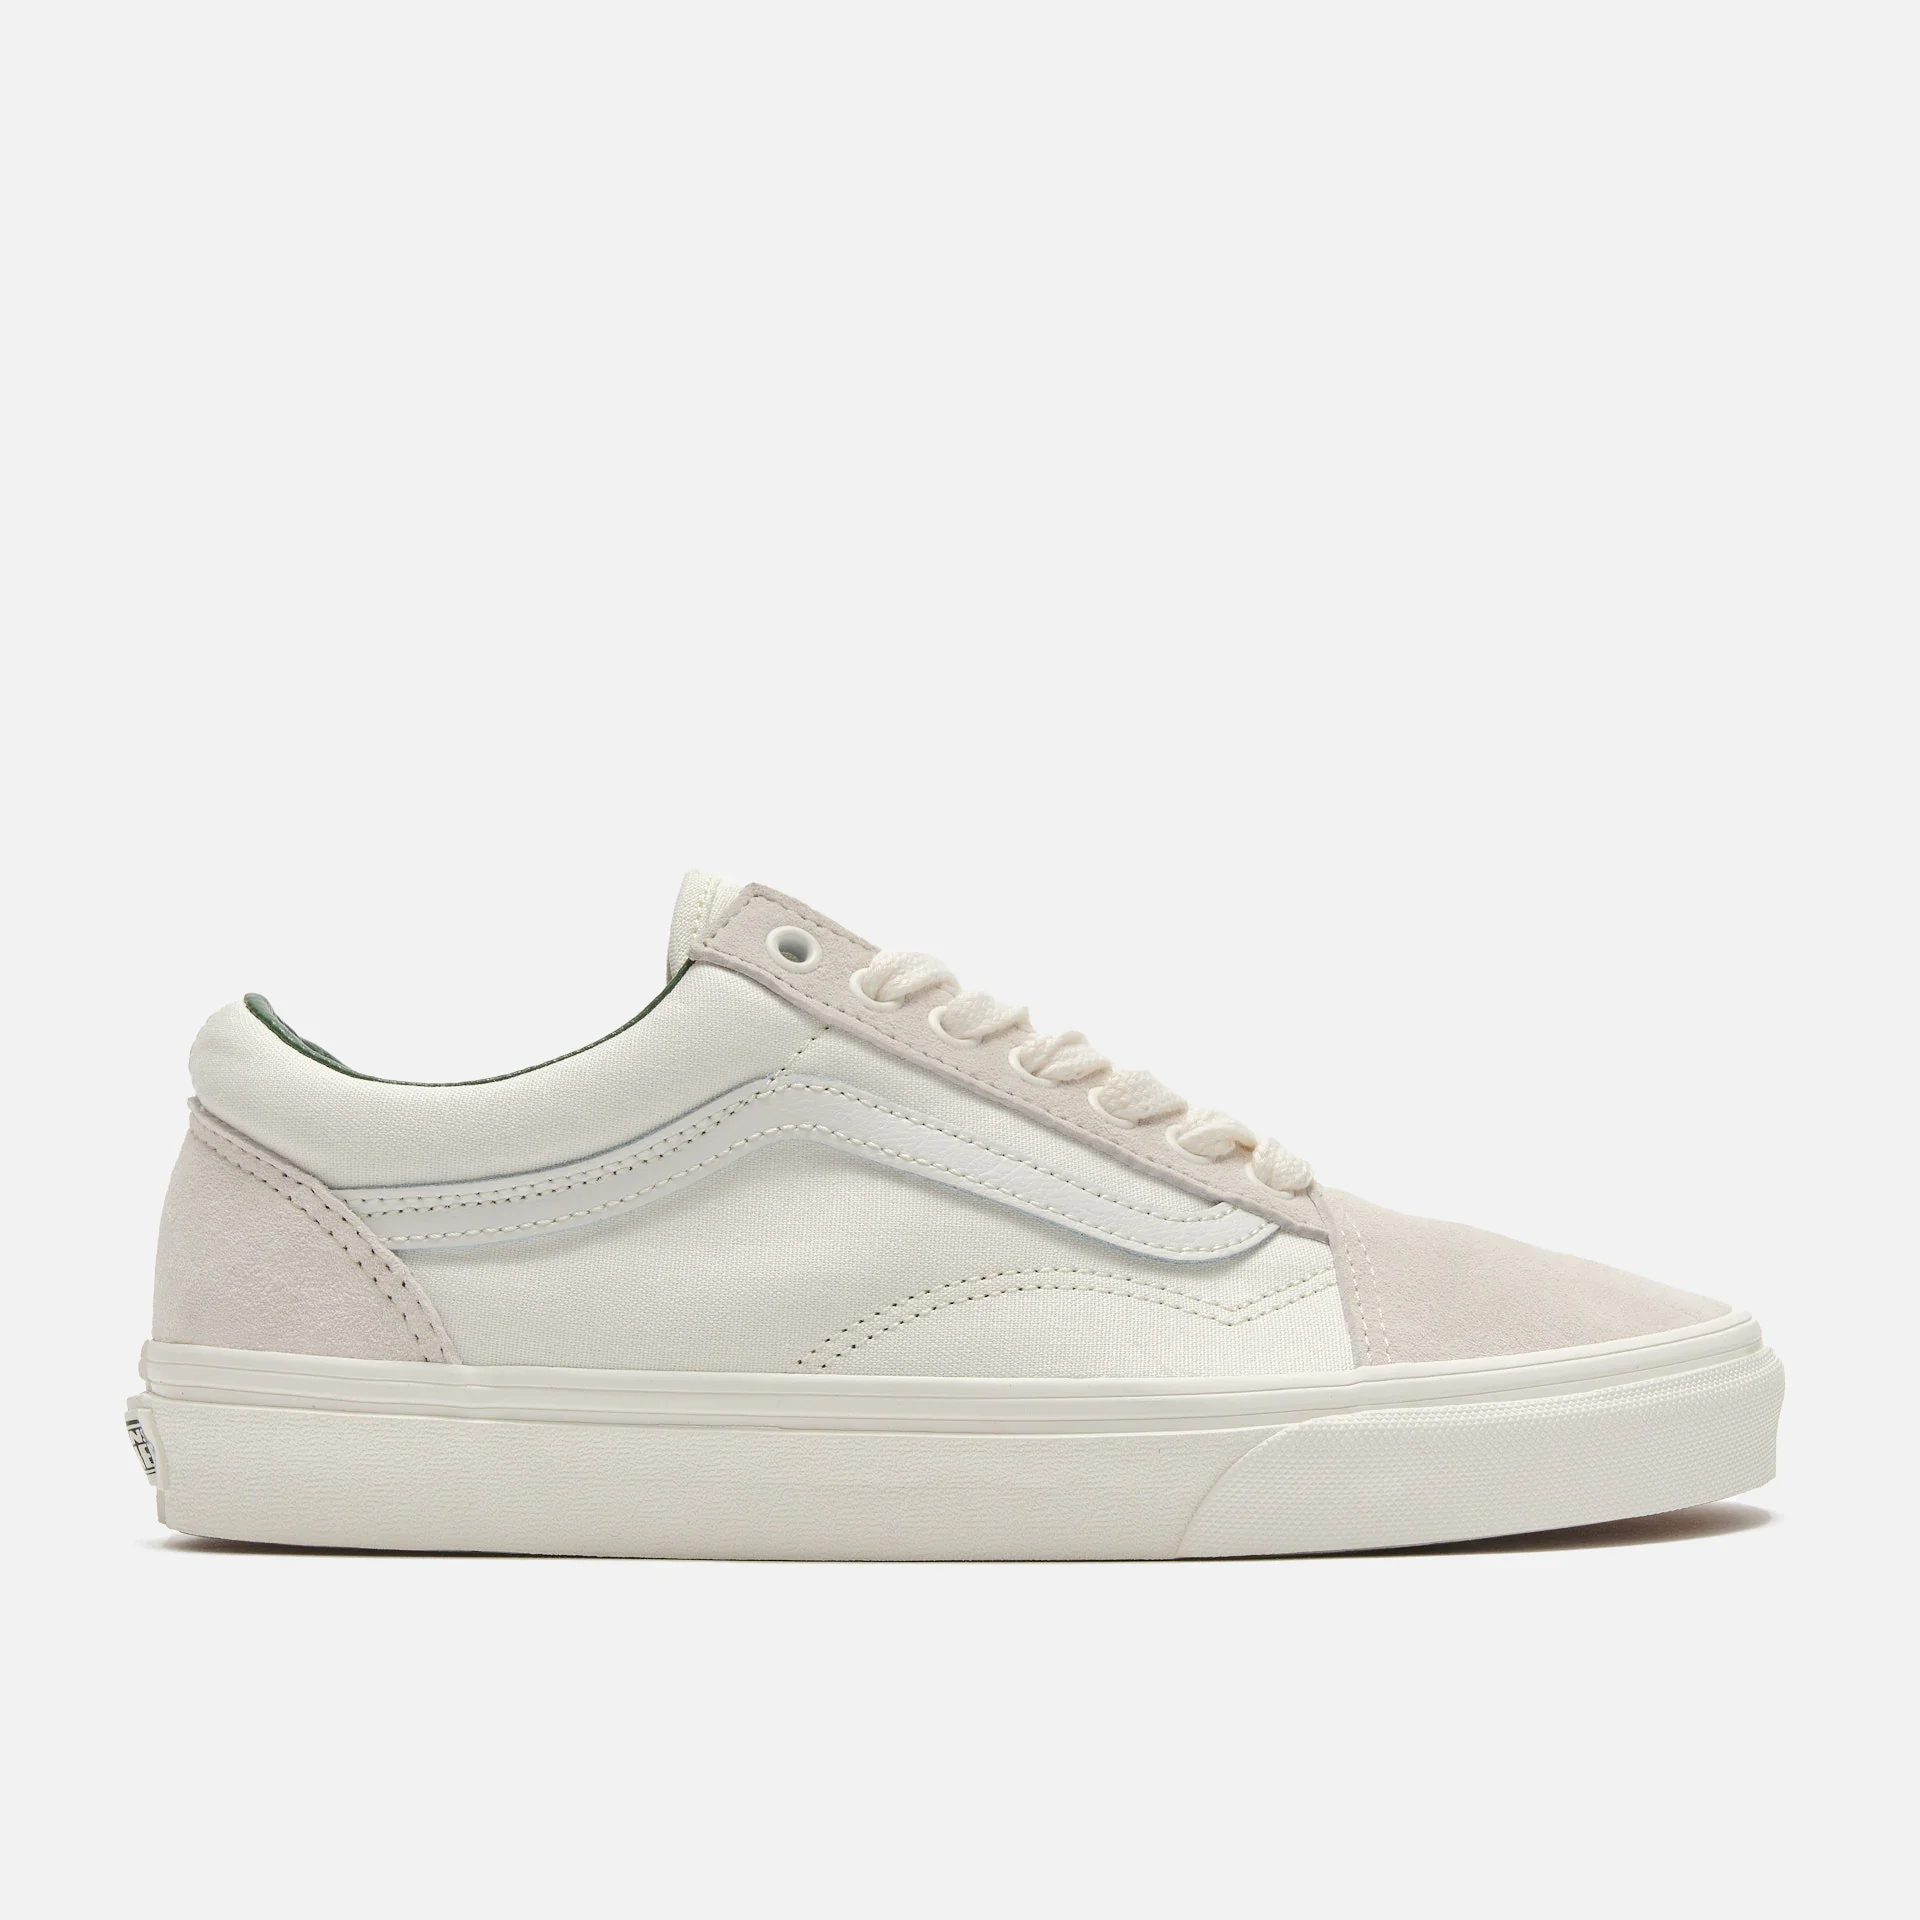 Vans Old Skool Sneakers White/Grey